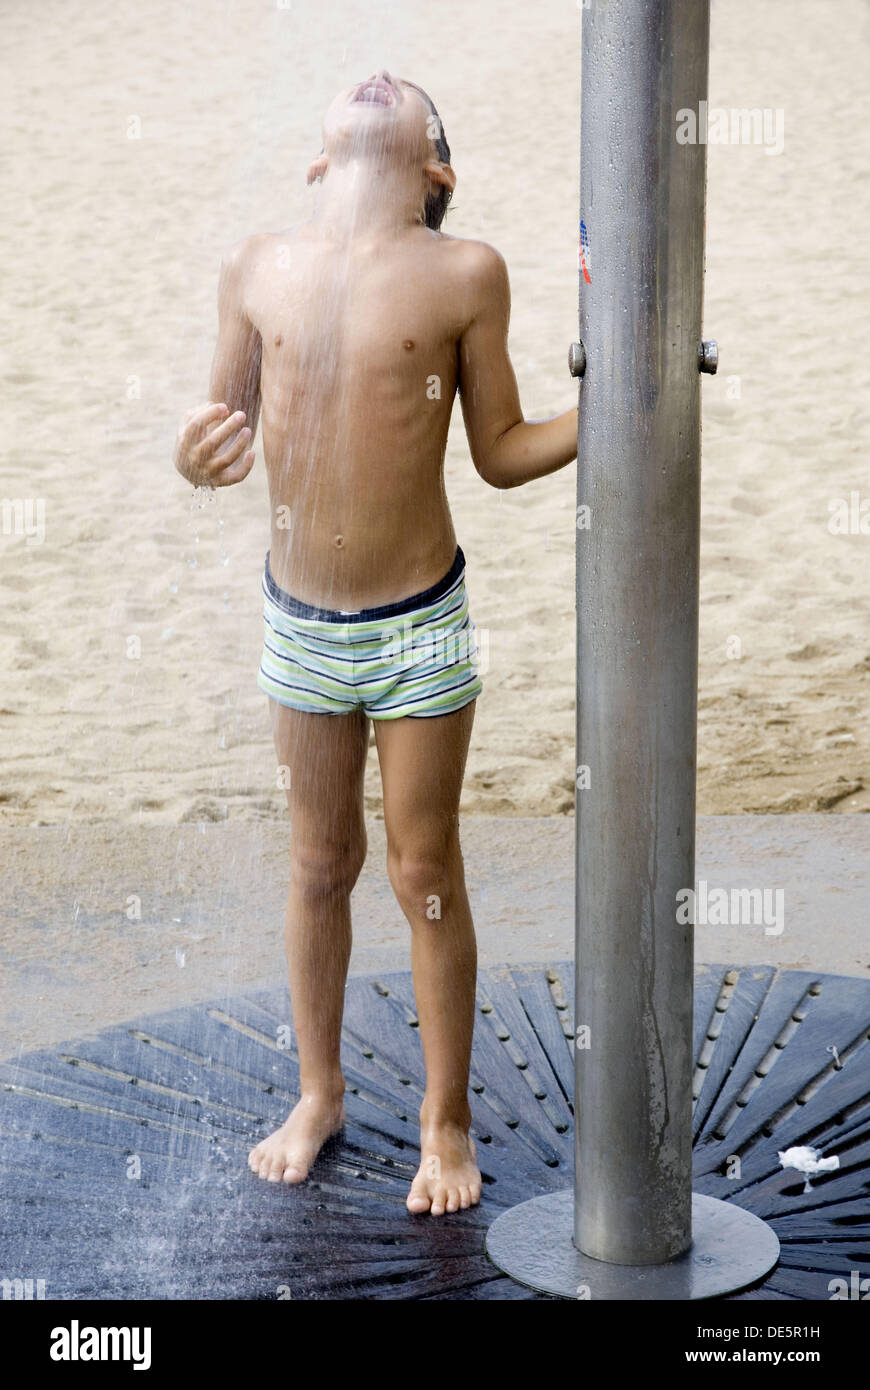 Garçon sur la plage, de prendre une douche Photo Stock - Alamy